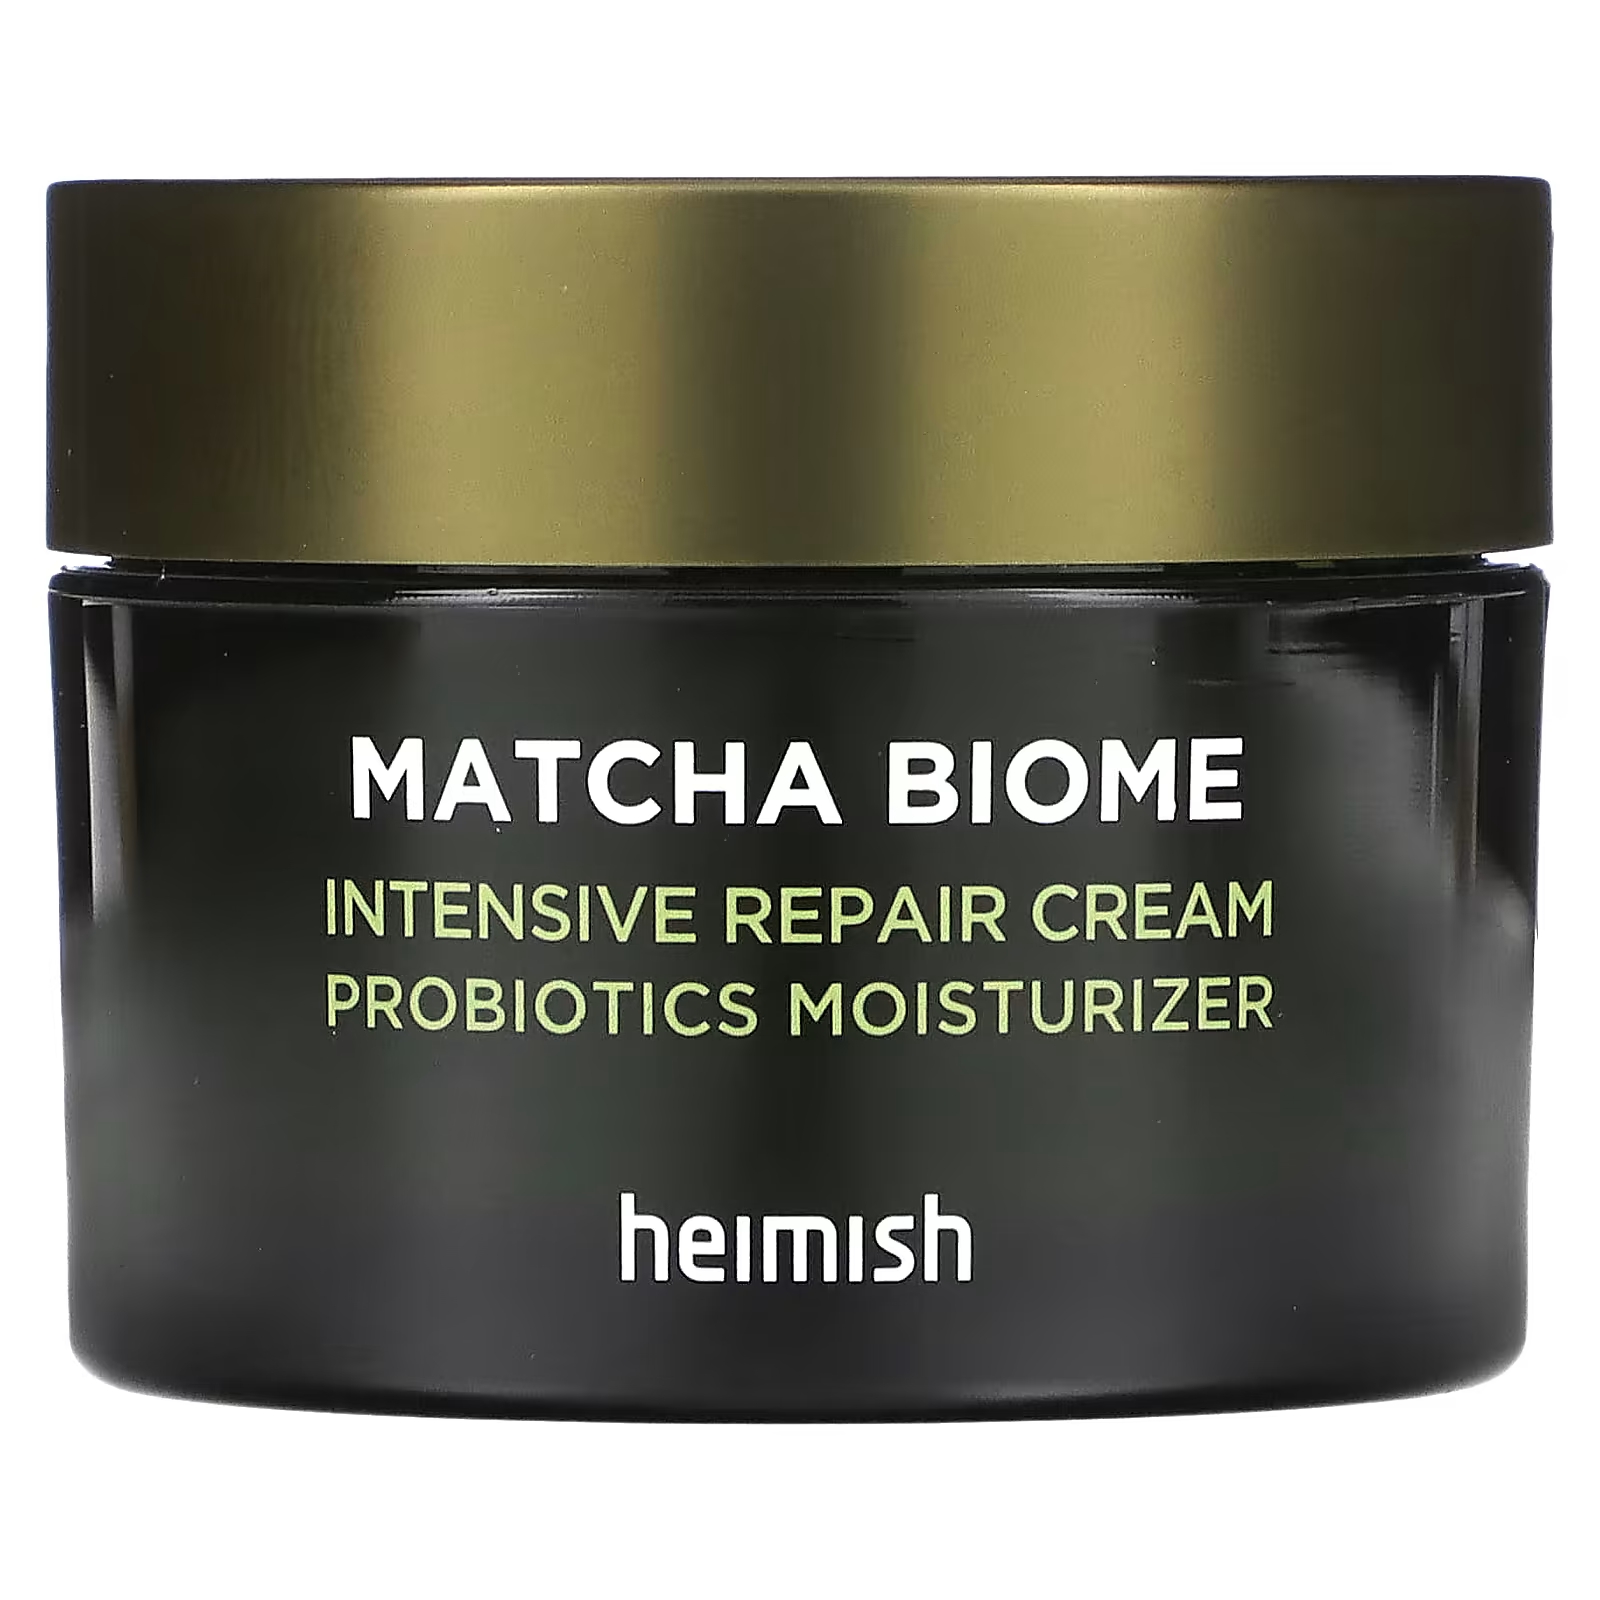 Крем Heimish Matcha Biome восстанавливающий, 50 мл heimish matcha biome очищающая пенка с аминокислотами 150 г 5 29 унции